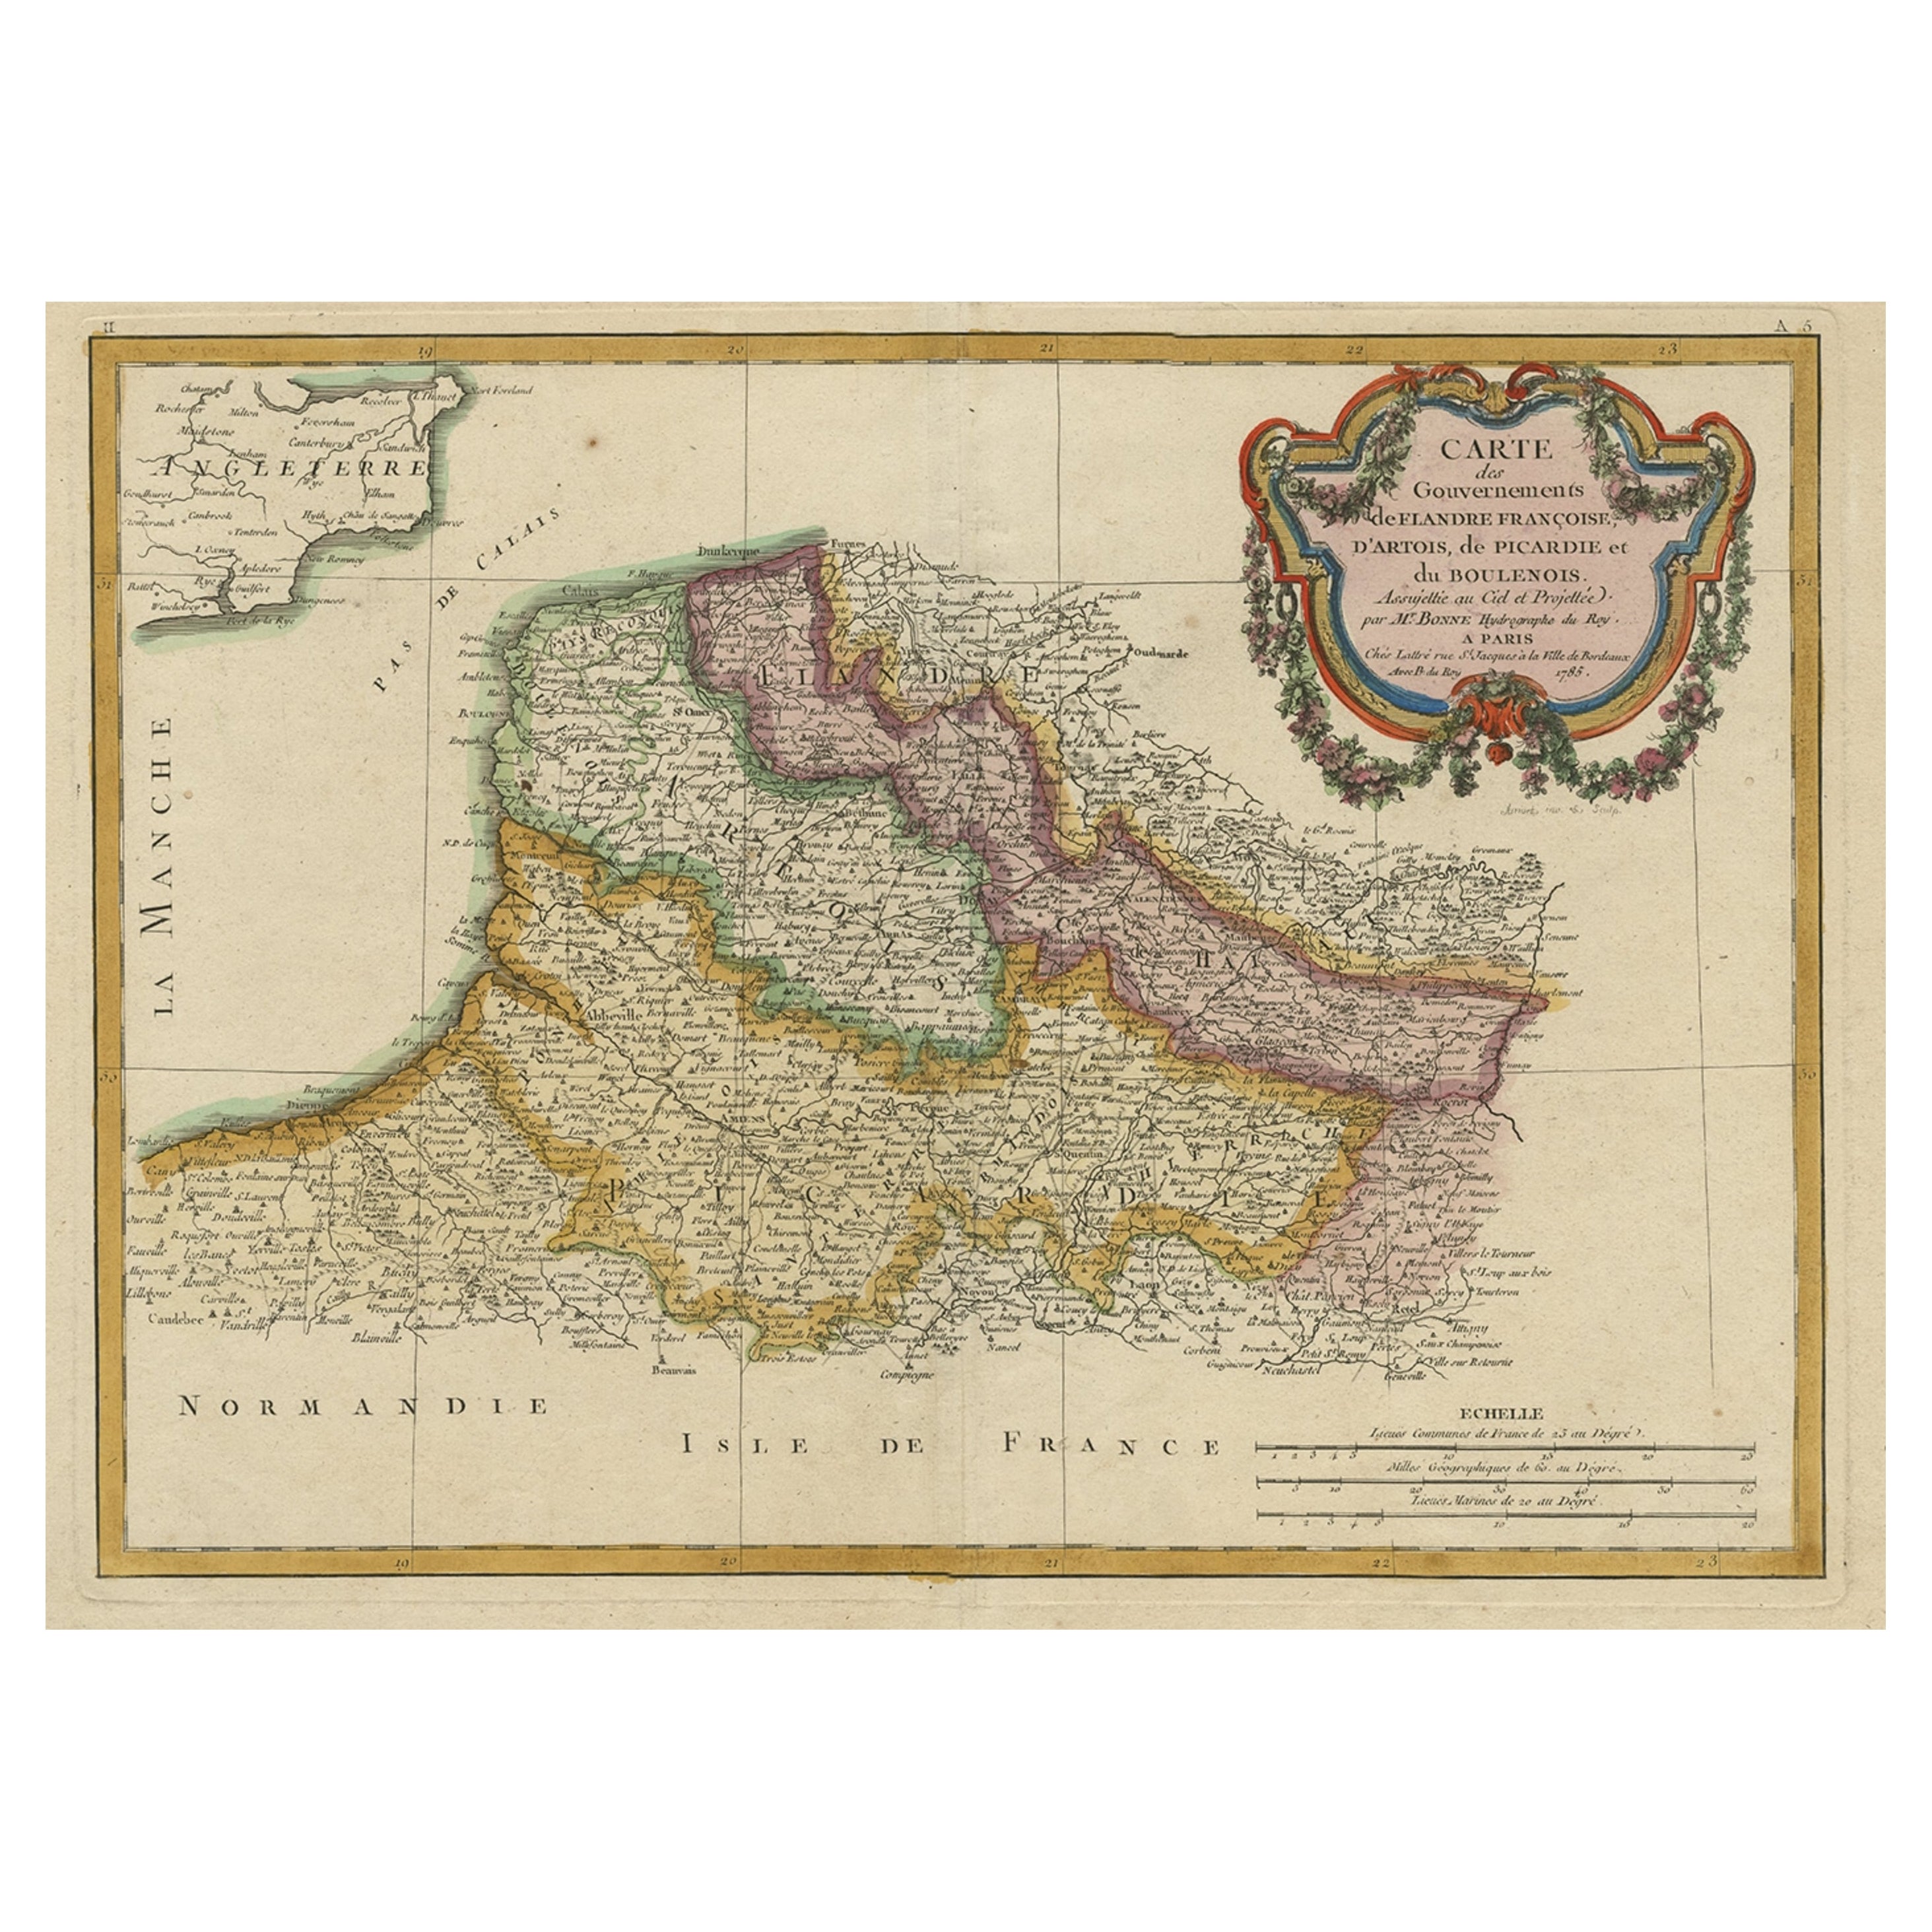 Dekorative Karte der französischen Regionen von Picardy, Artois und Französisch Flandern, um 1780